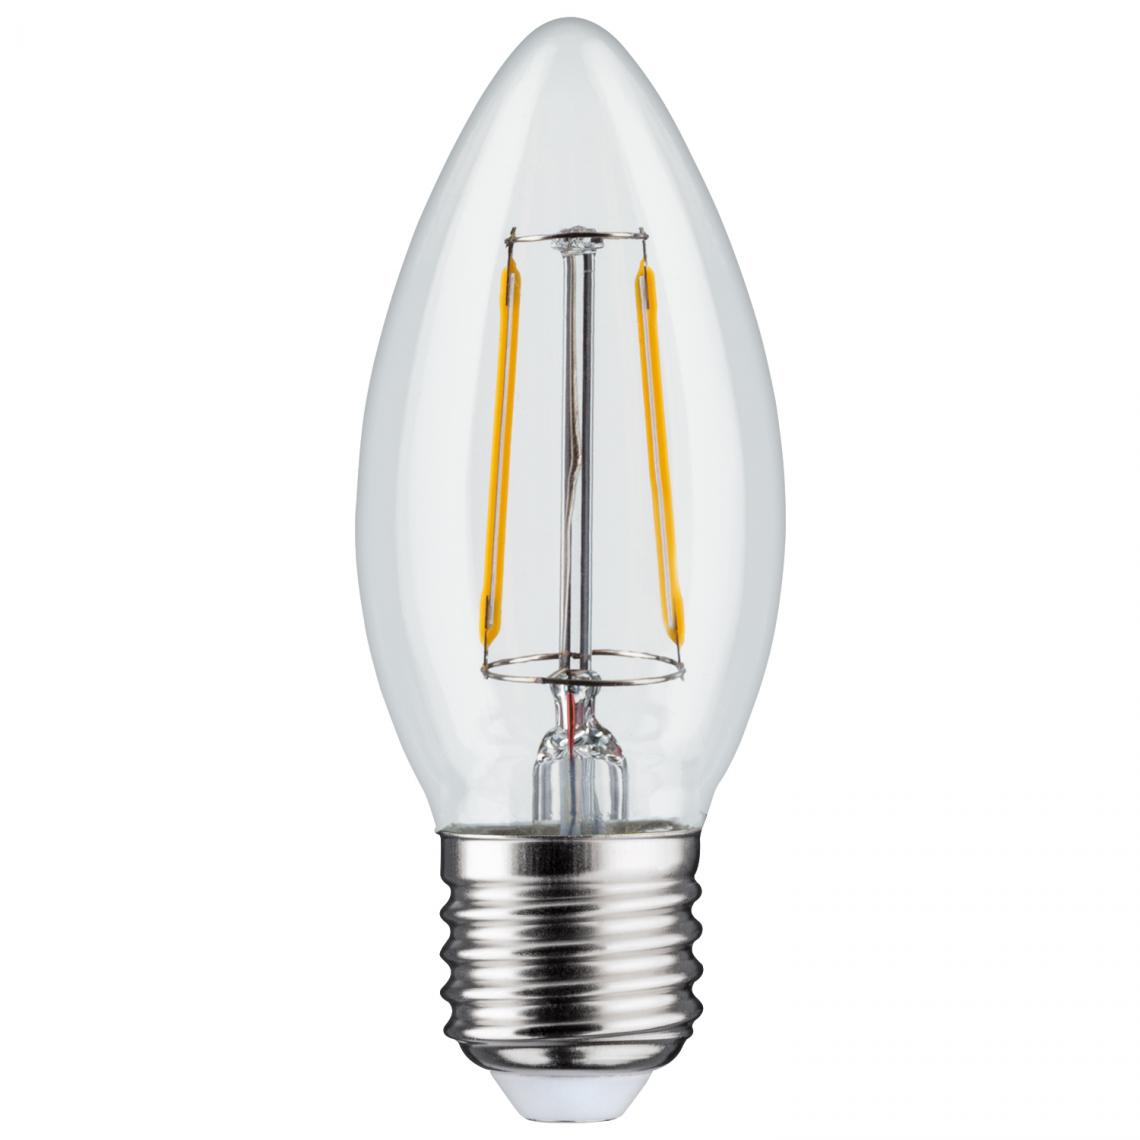 Maclean - Ampoule à filament à LED E27 6W 230V WW blanc chaud 3000K 600lm Maclean Energy MCE265 - Ampoules LED